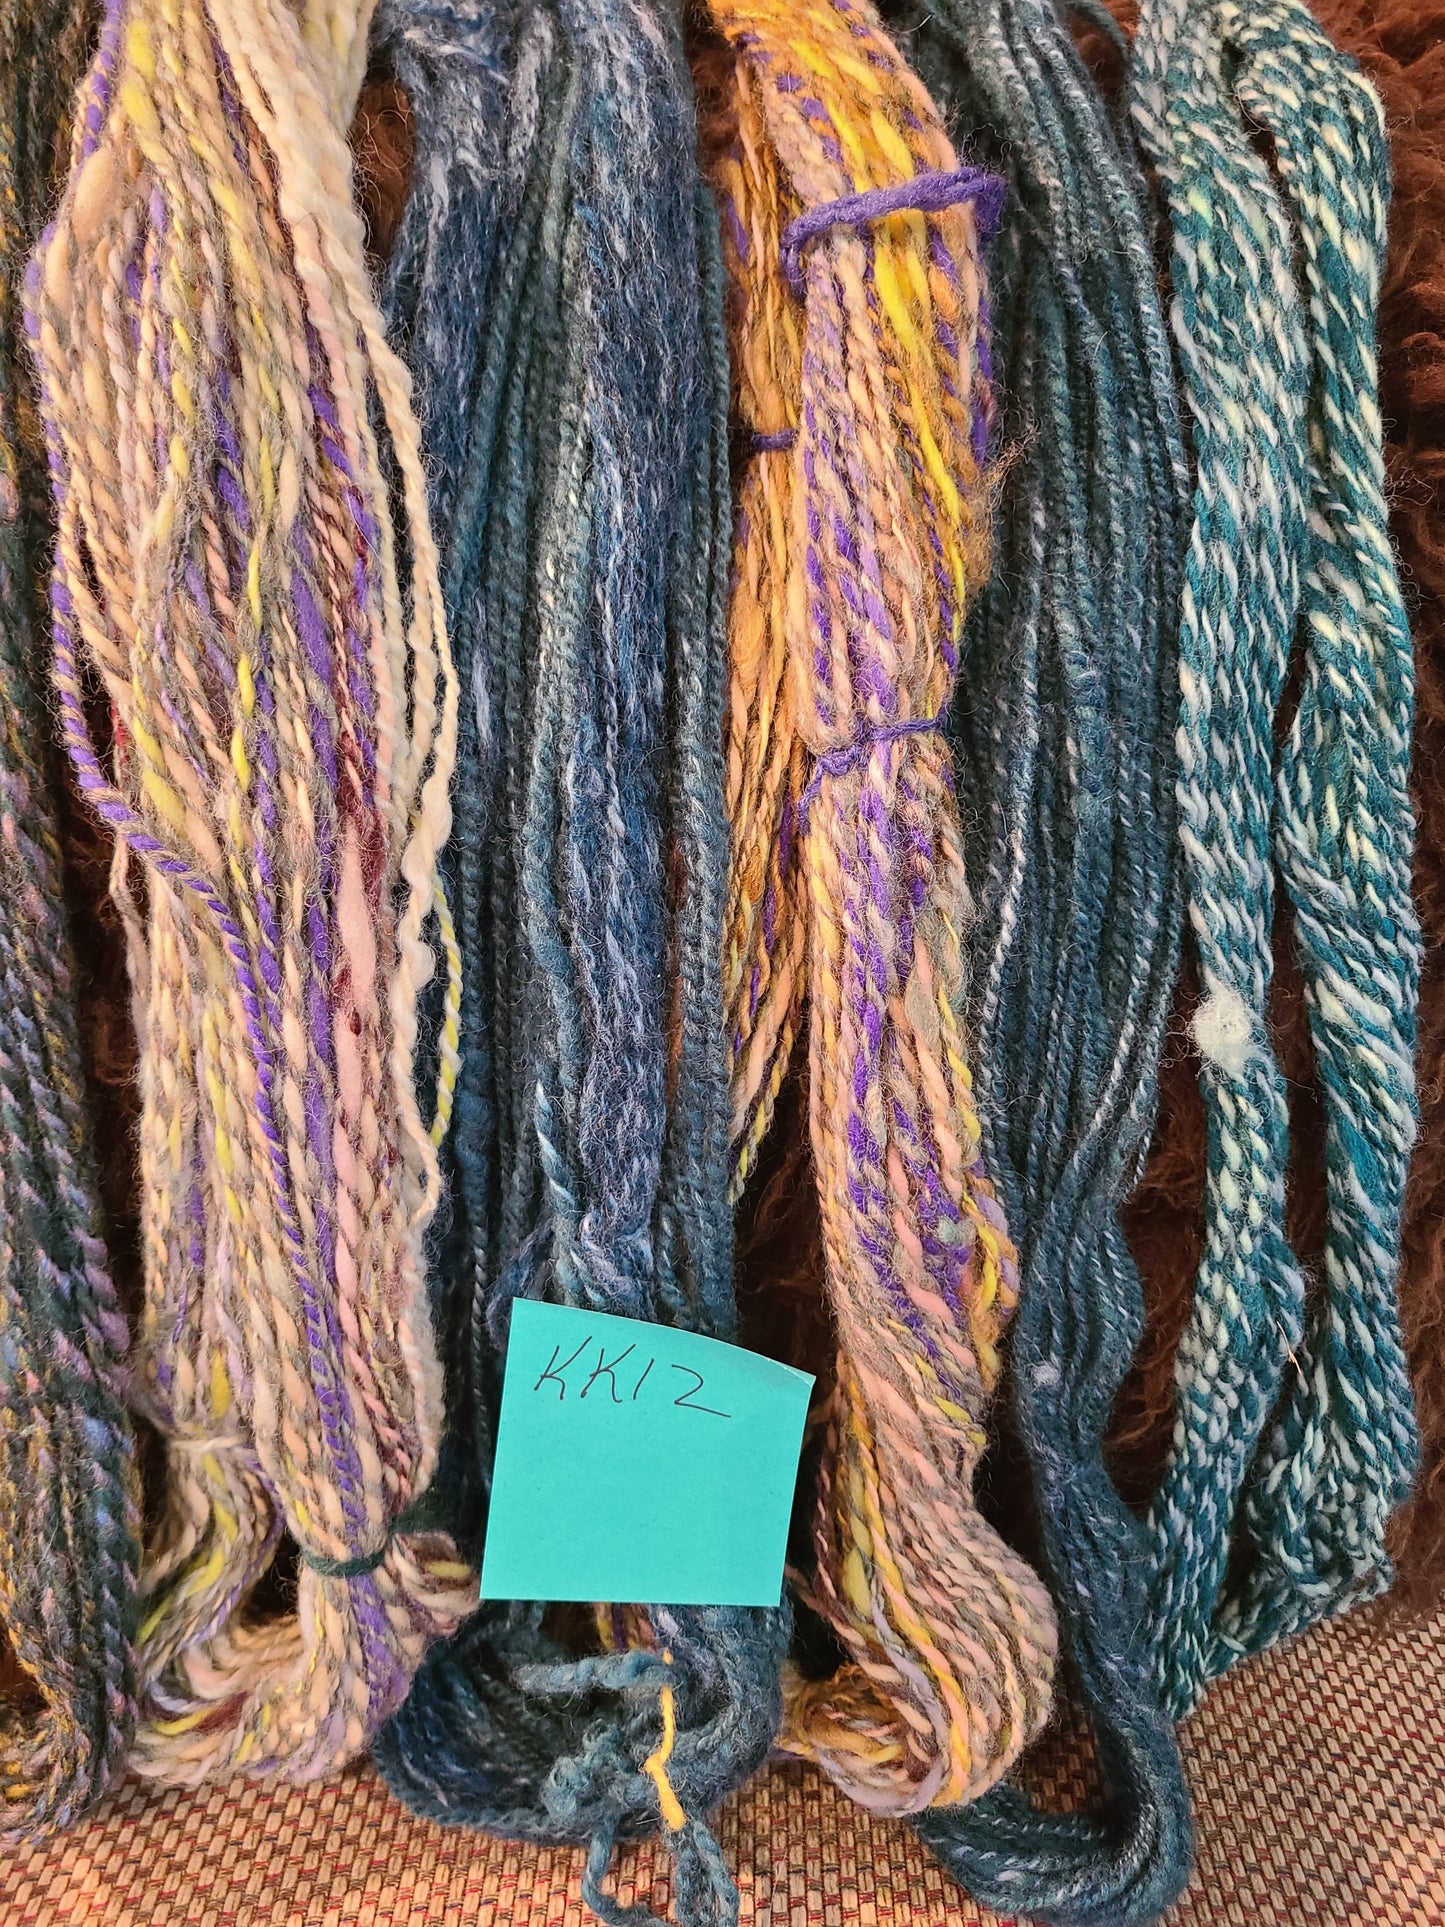 Yarn Handspun Knitters Knot- "Green Kalaiedescope" Romney DK Weight KKSS12 2ply - 161yards & 8.9oz